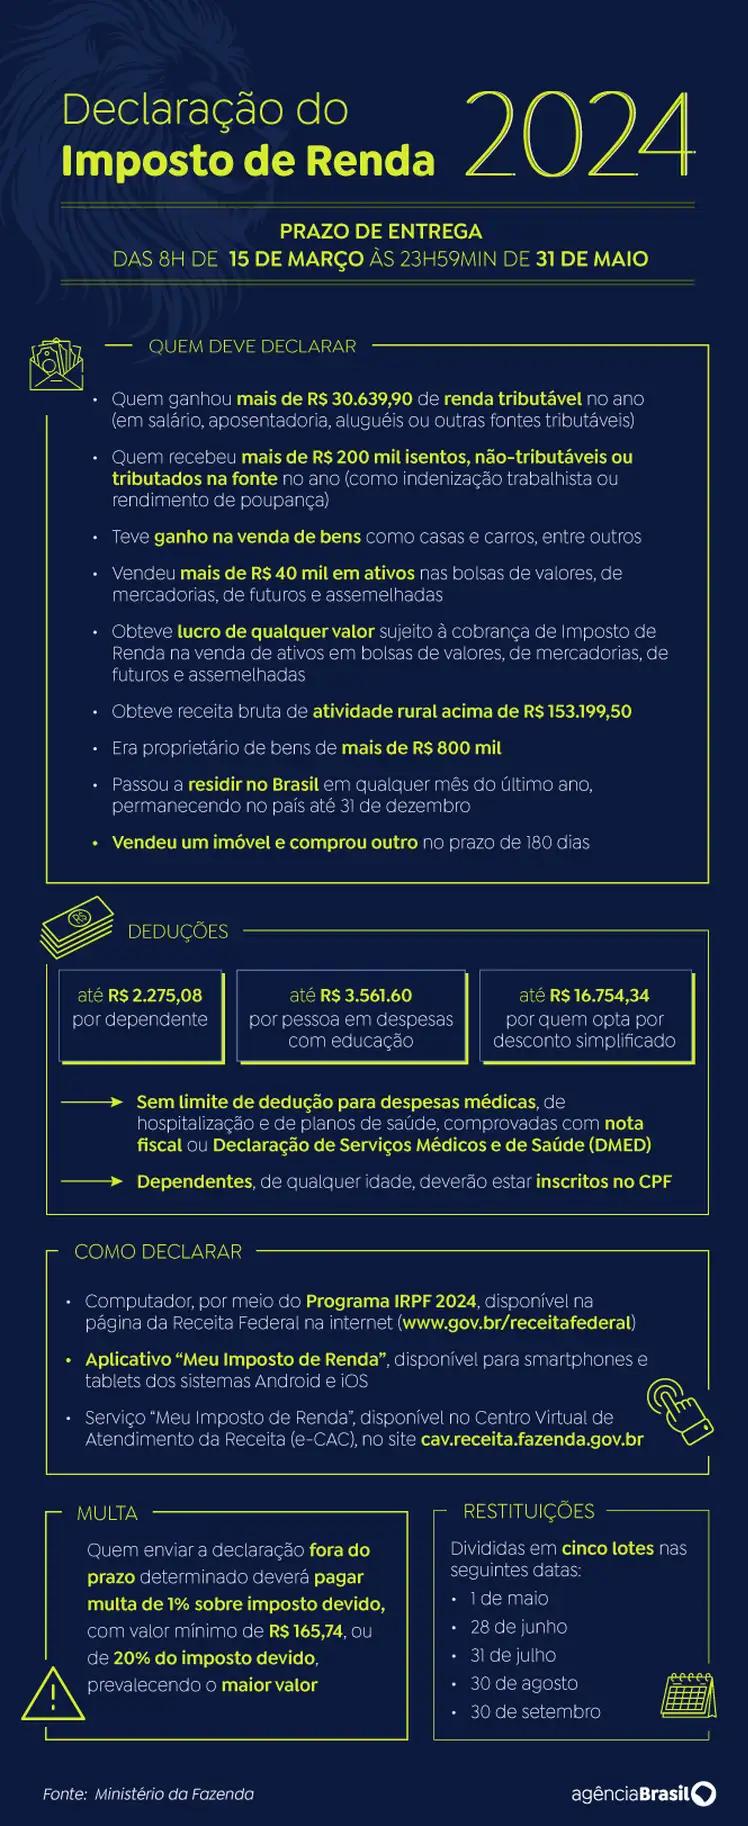 Declaração do Imposto de Renda 2024 (Arte Agência Brasil)